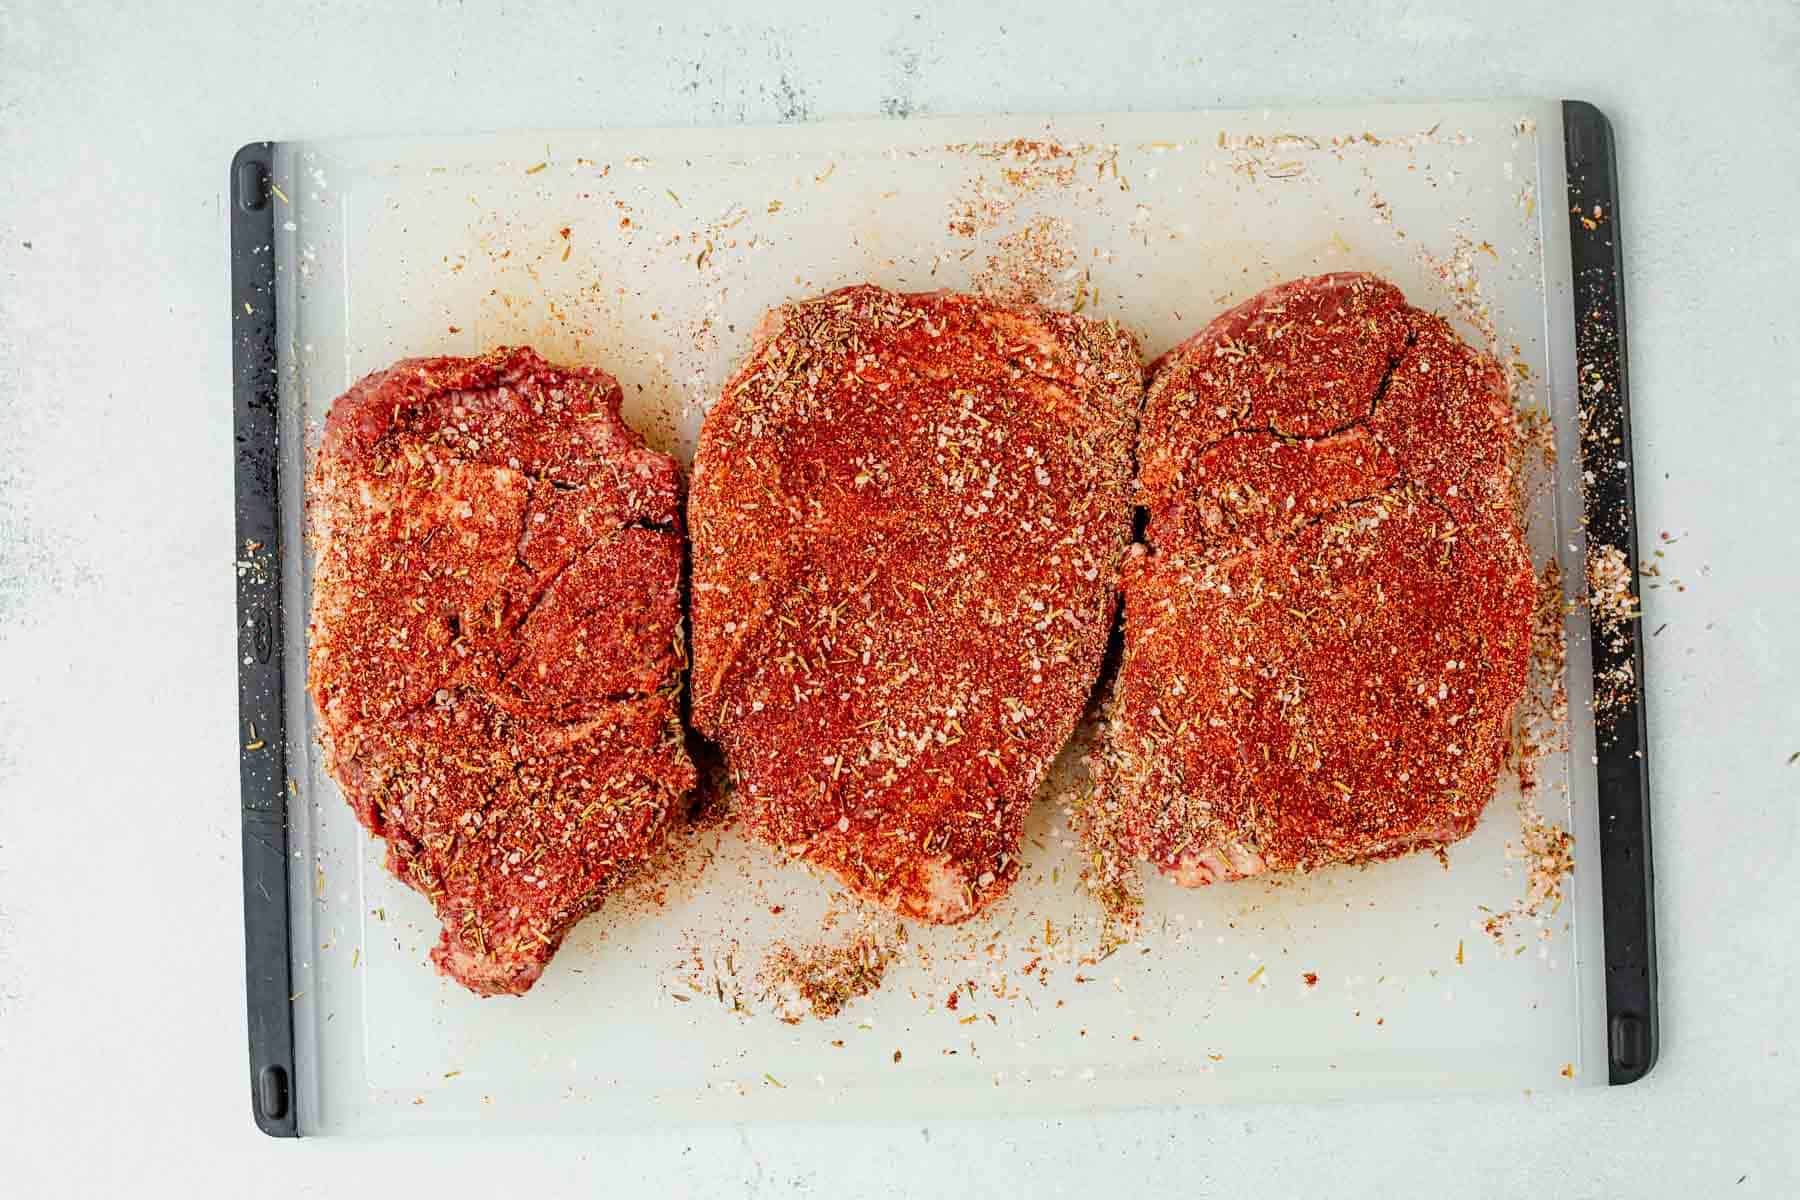 three ribeye steaks coated in steak seasoning